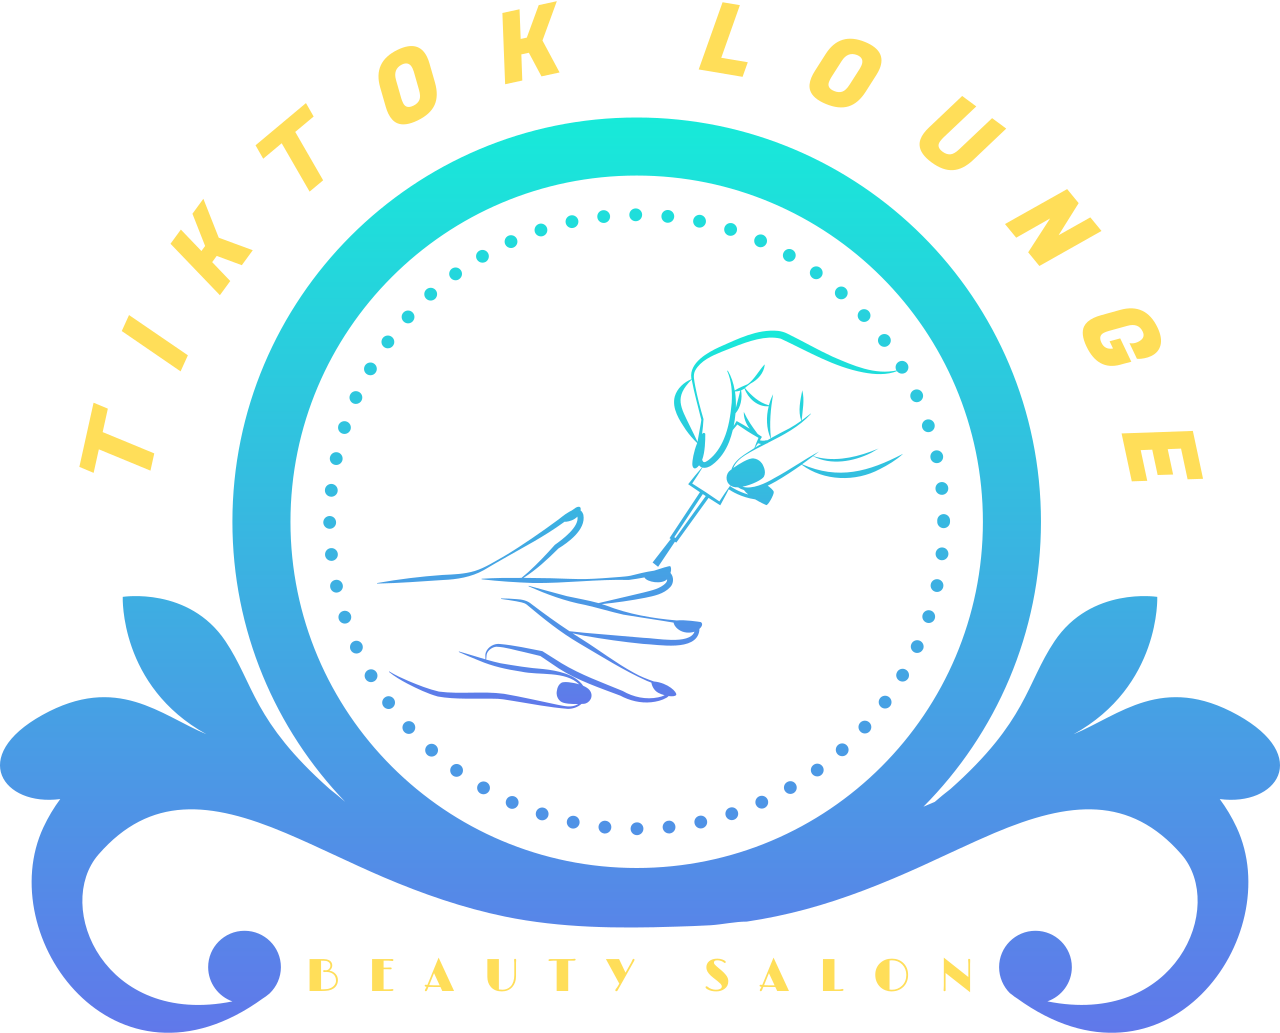 TIKTOK LOUNGE's web page